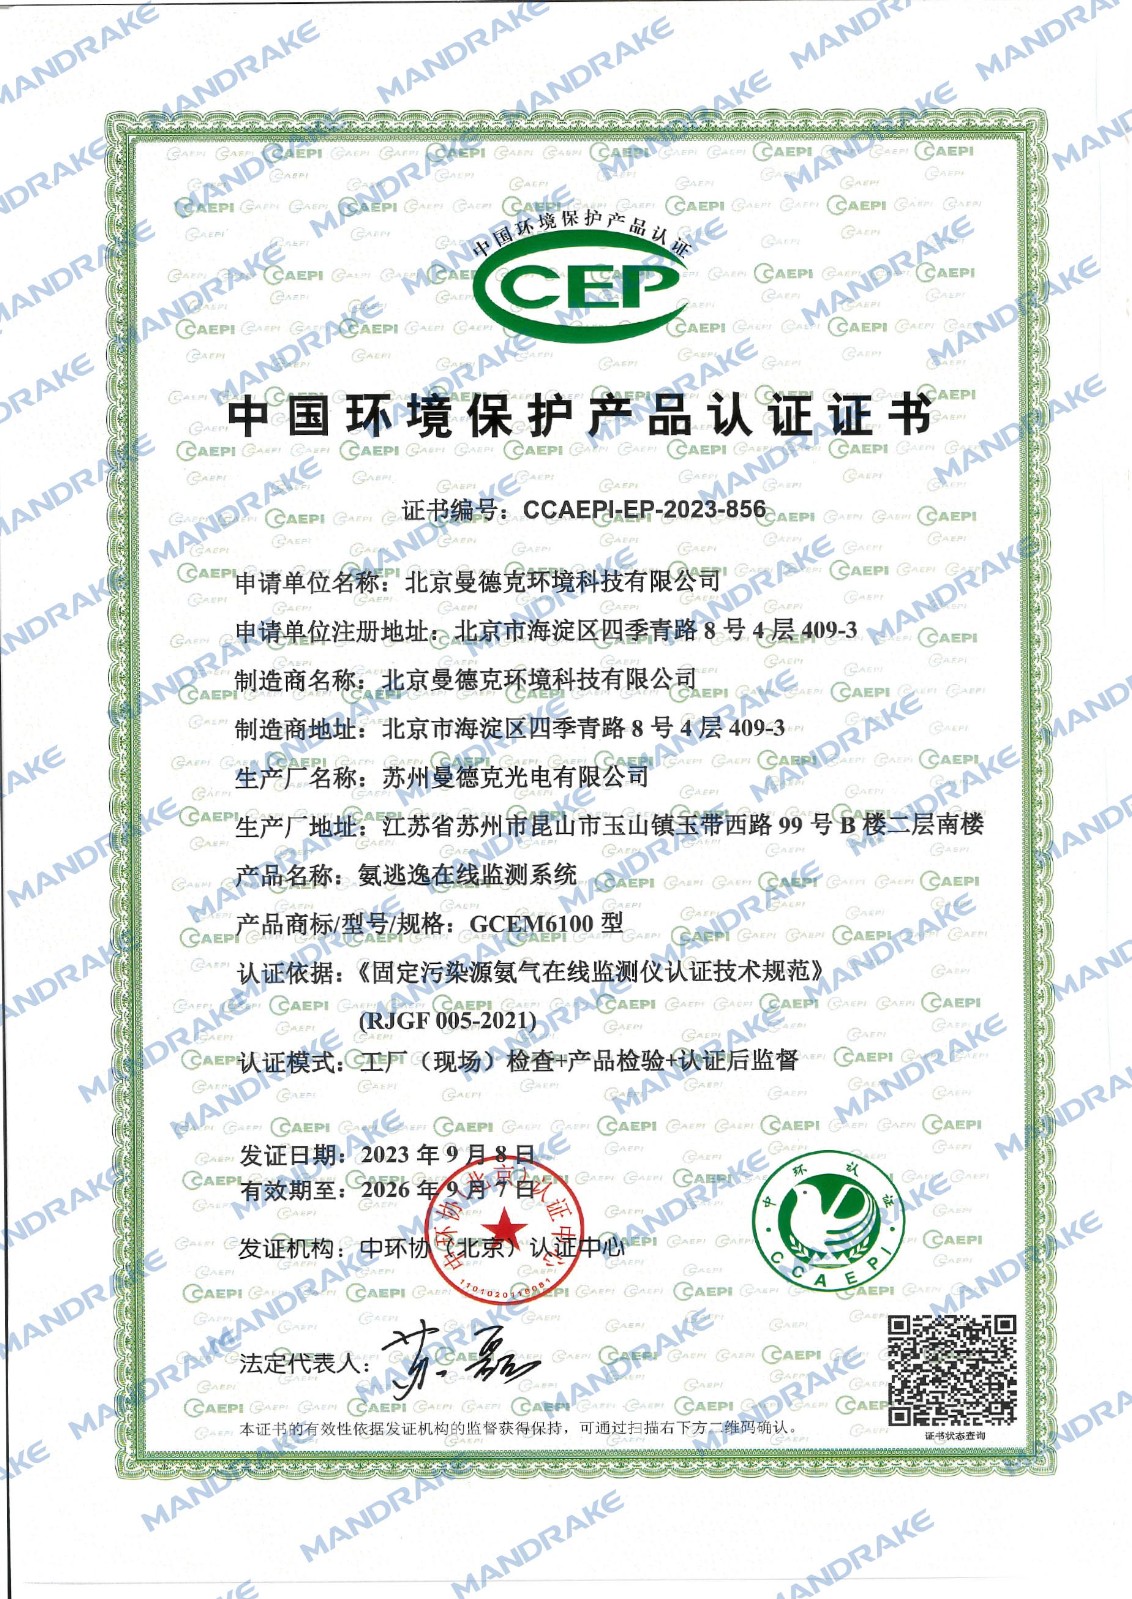 GCEM6100型氨逃逸在线监测系统环保认证证书.jpg